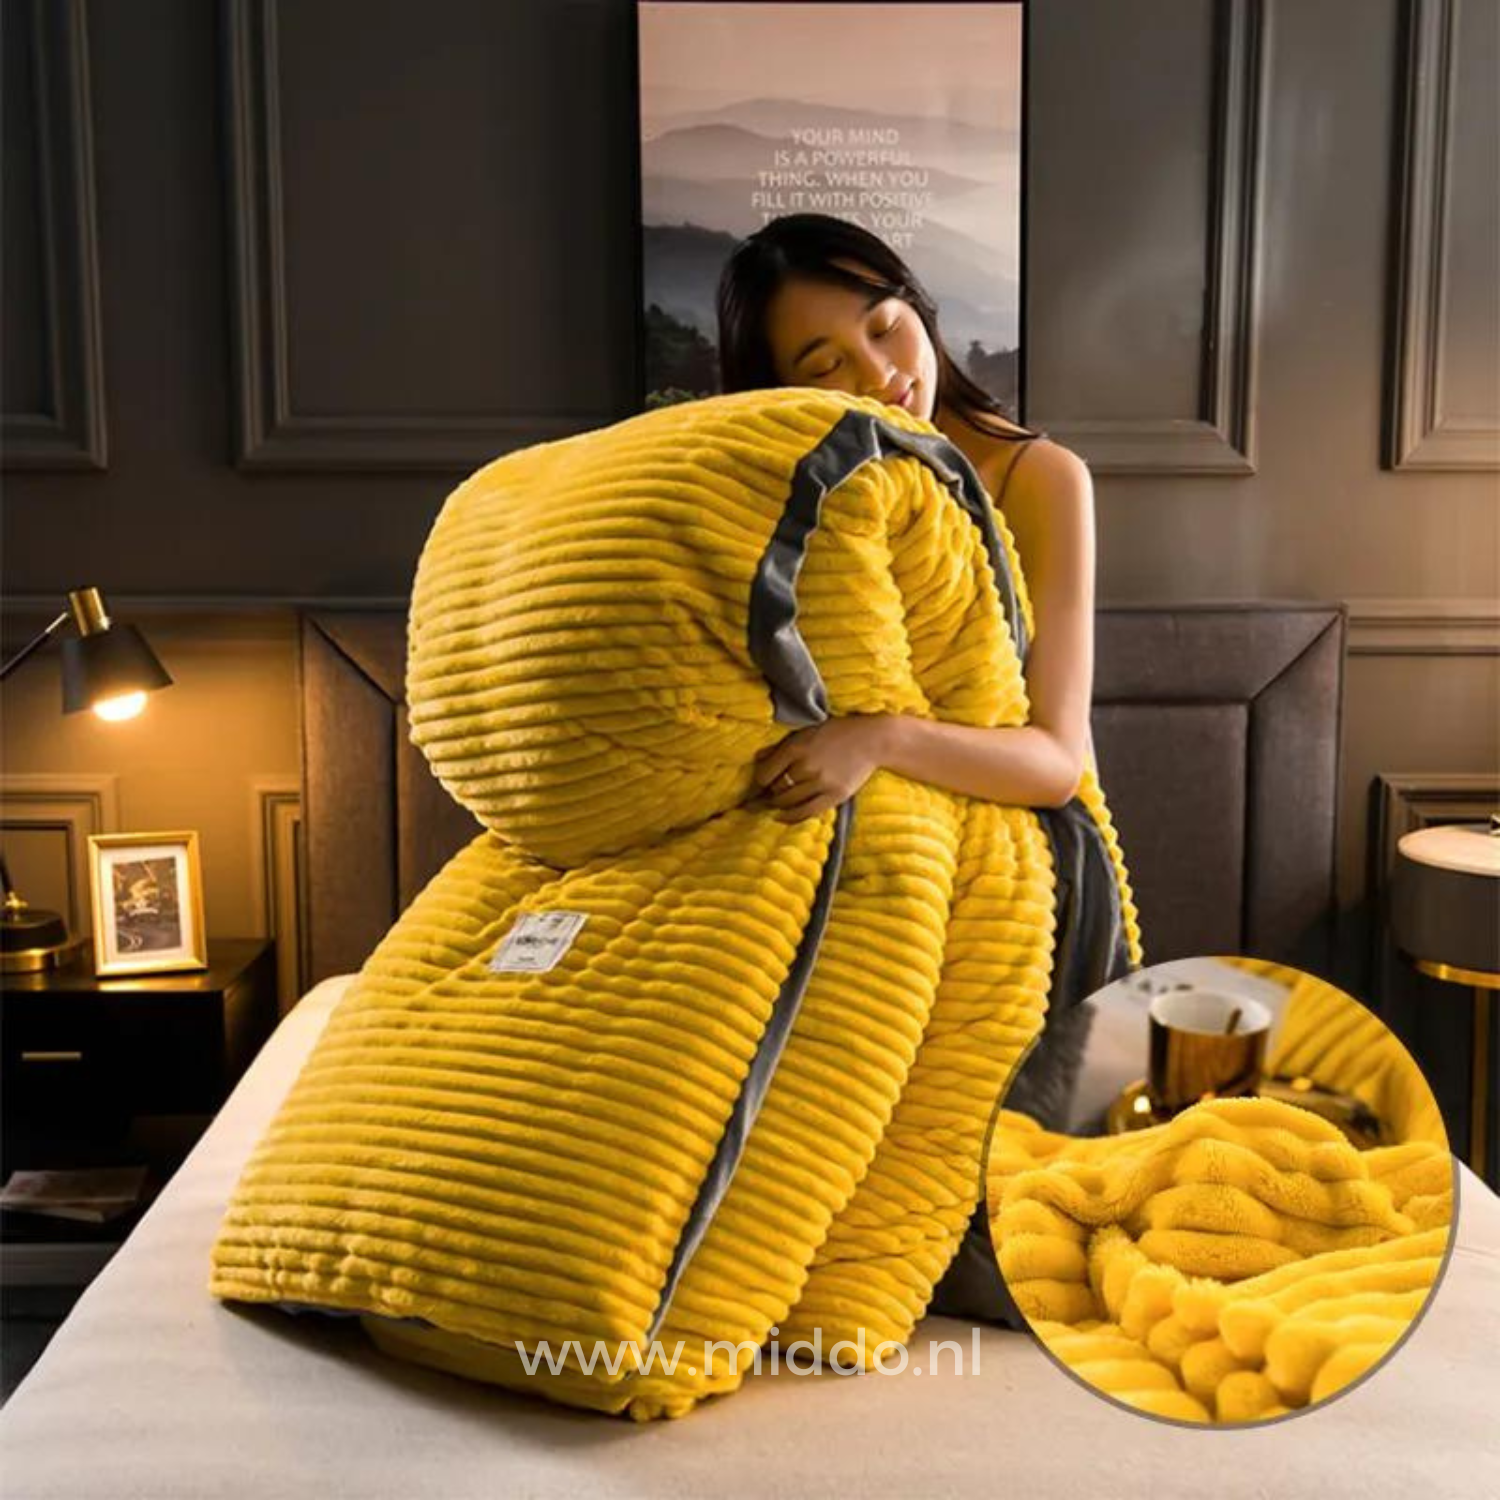 Vrouw met opgevouwen geel dekbedovertrek met dekbed erin op een bed